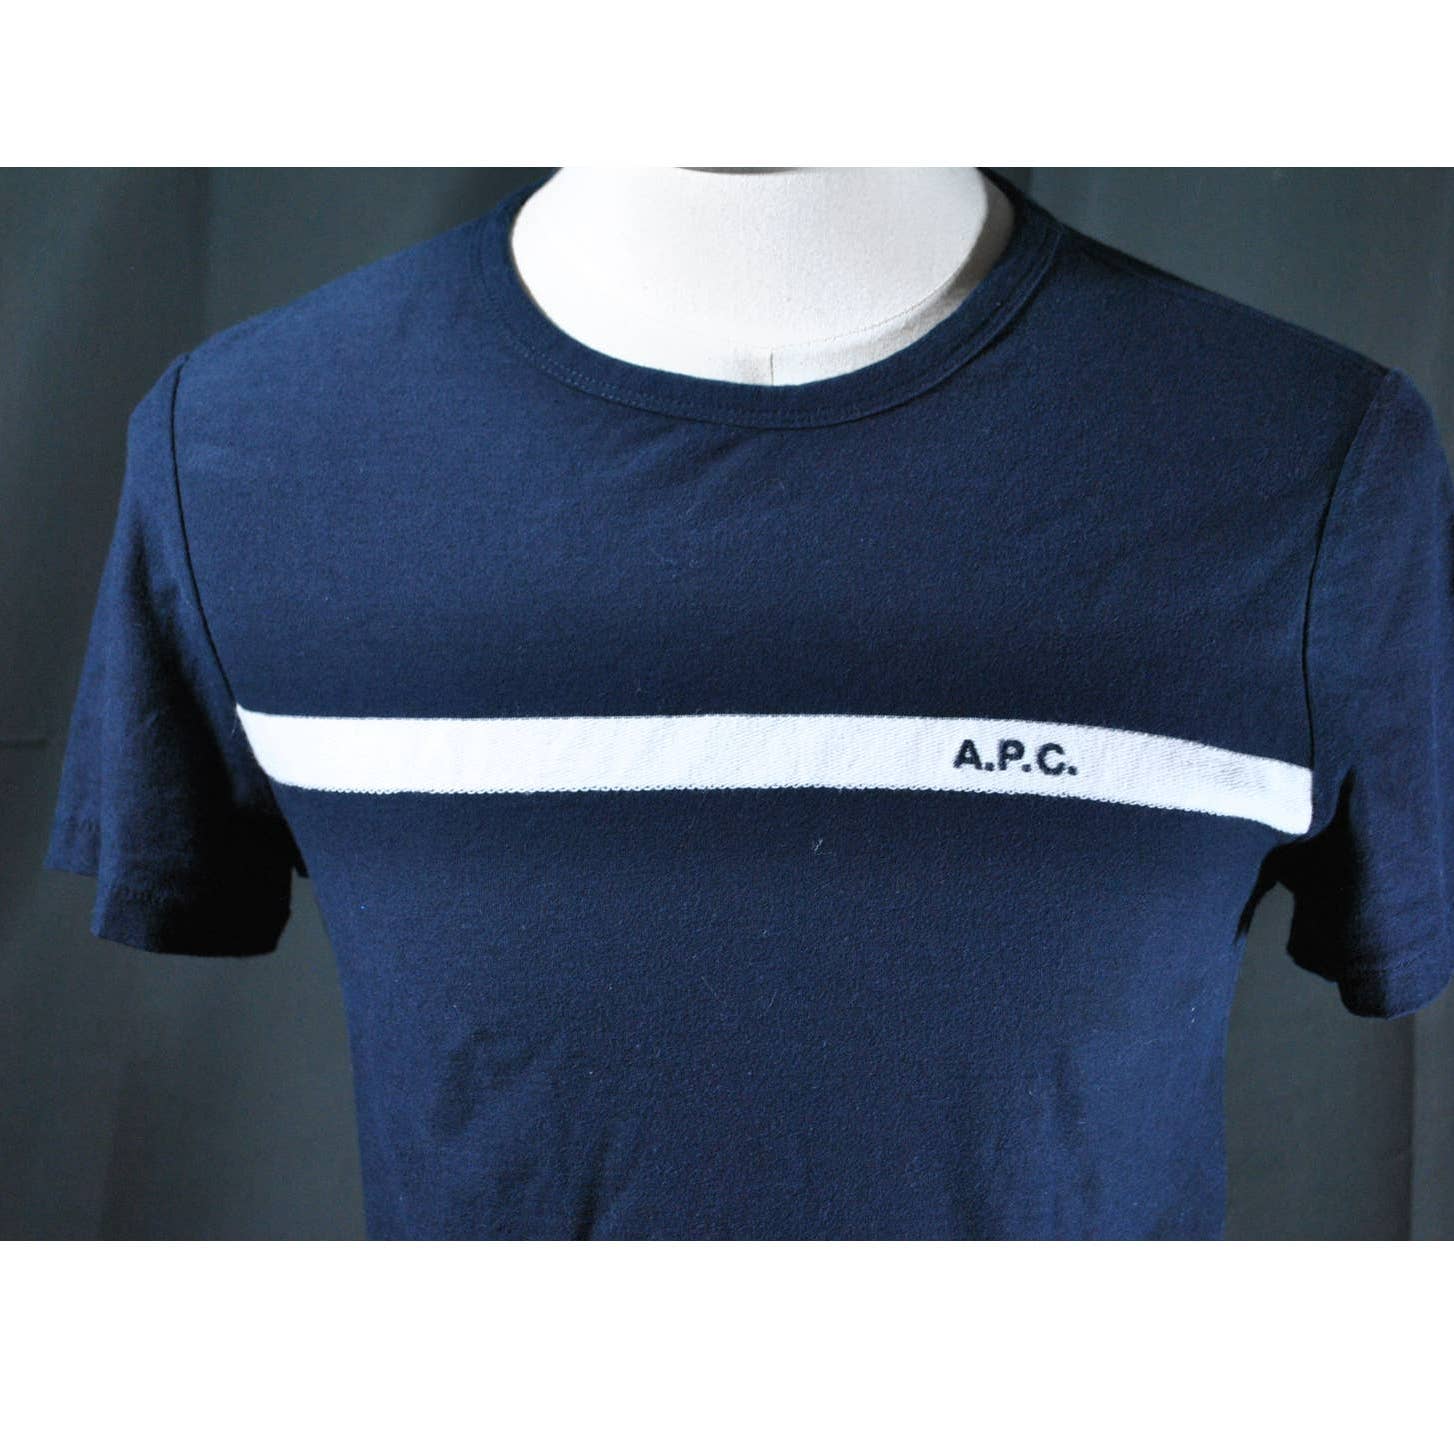 A.P.C.  Navy Blue Logo T-Shirt - S